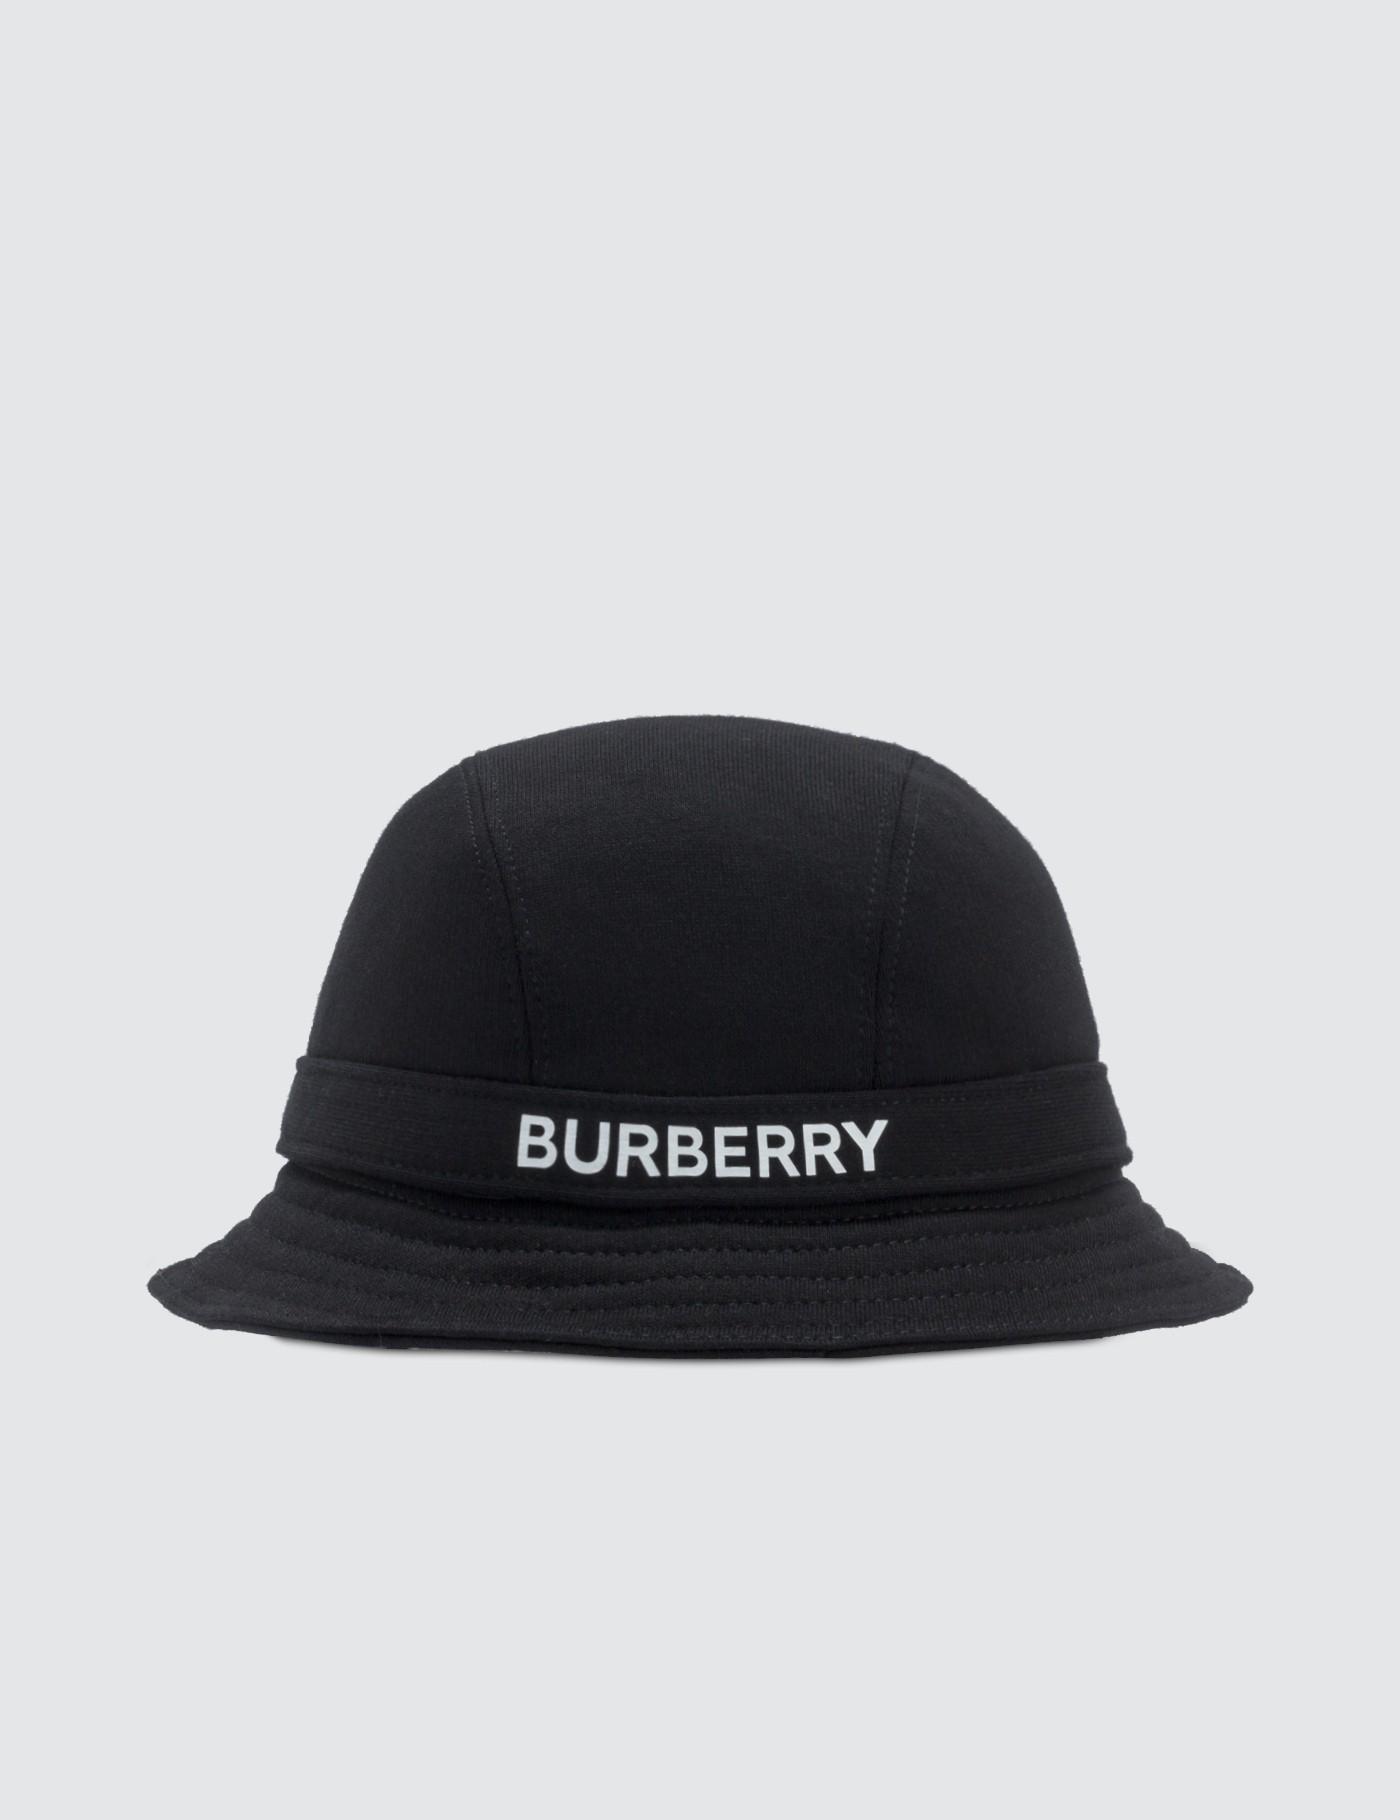 burberry bucket hat black